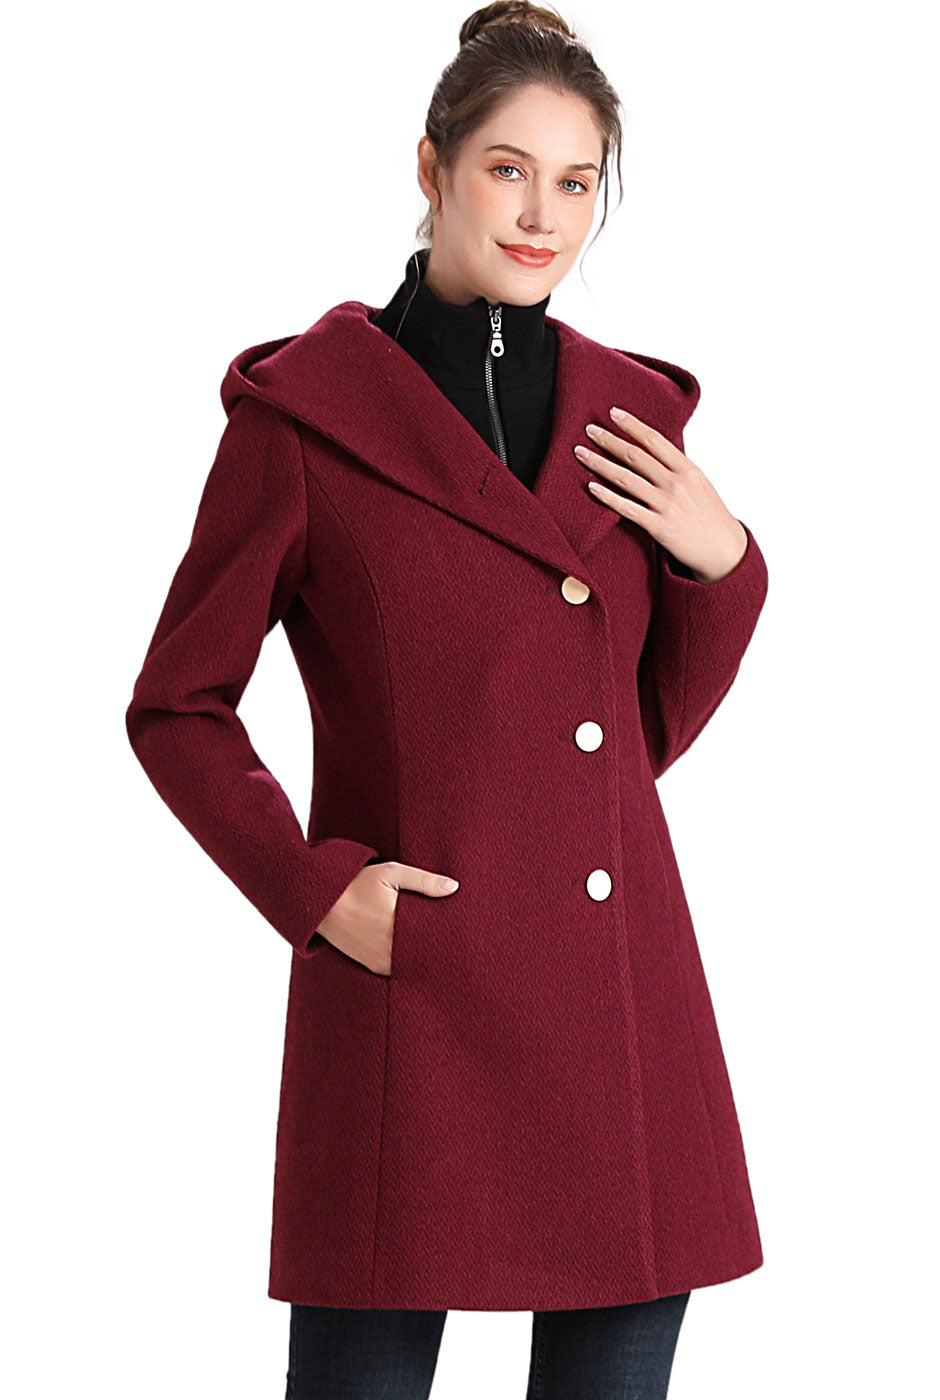 BGSD Women Sol Wool Asymmetrical Hooded Walker Coat